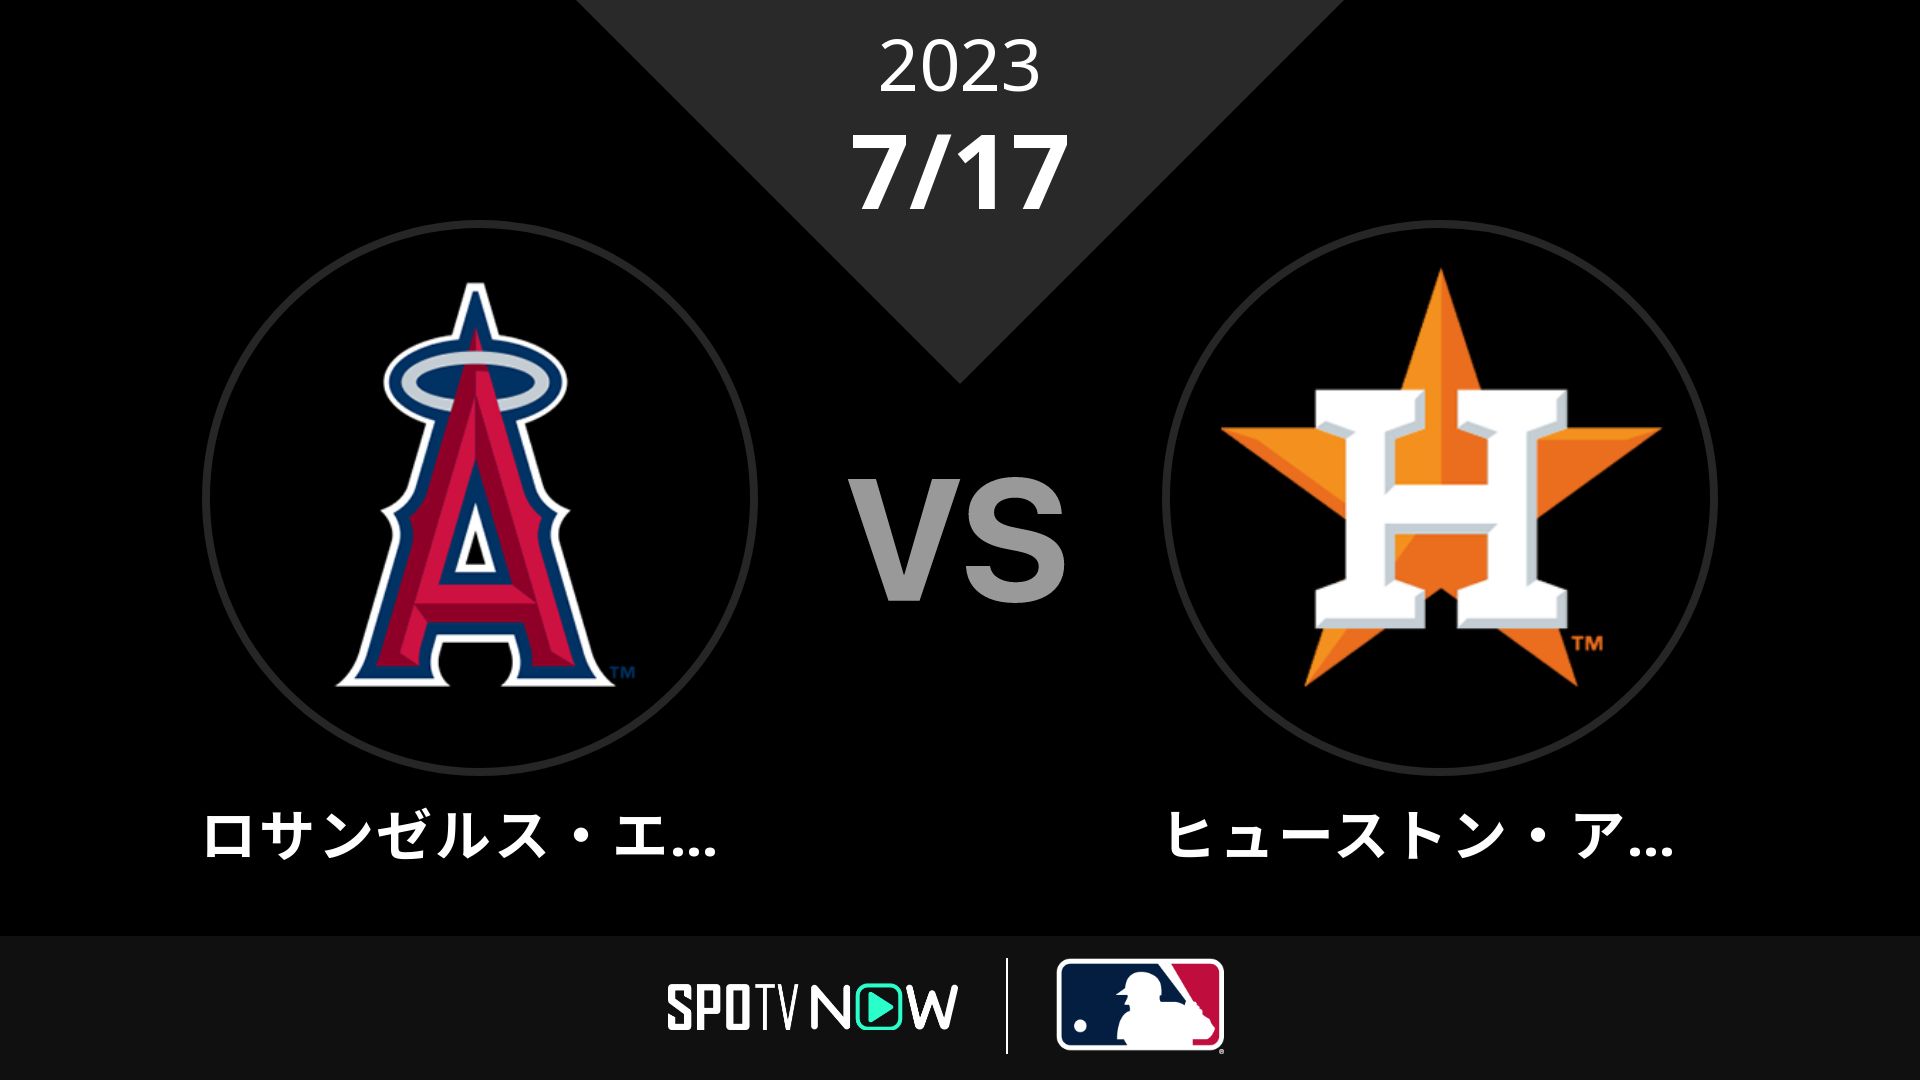 2023/7/17 エンゼルス vs アストロズ [MLB]